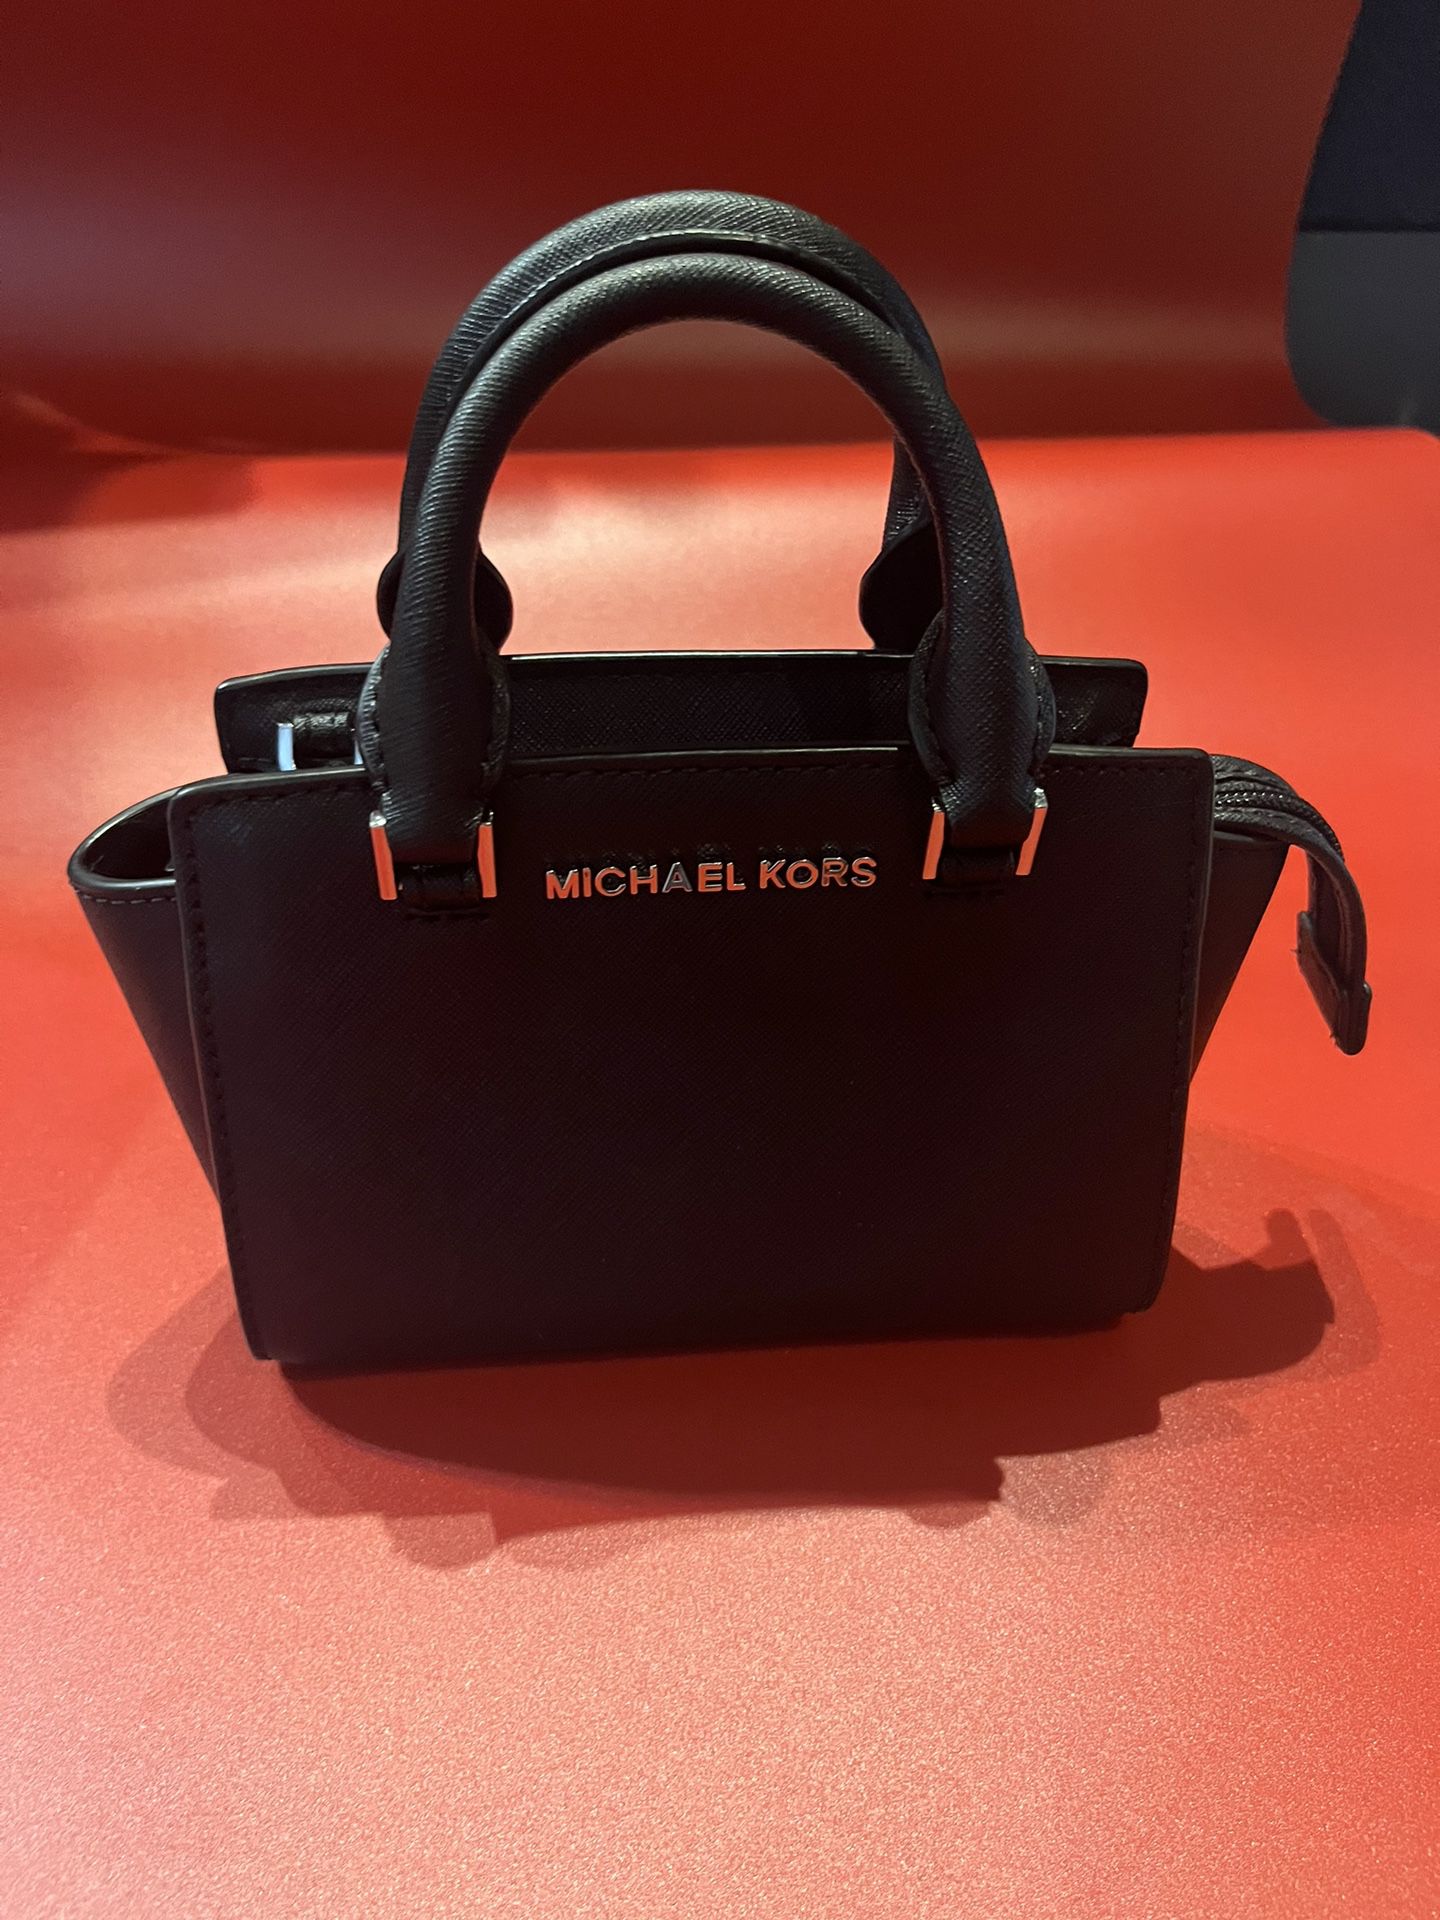 Michael Kors, small satchel, shoulder, Crossbody black purse bag 